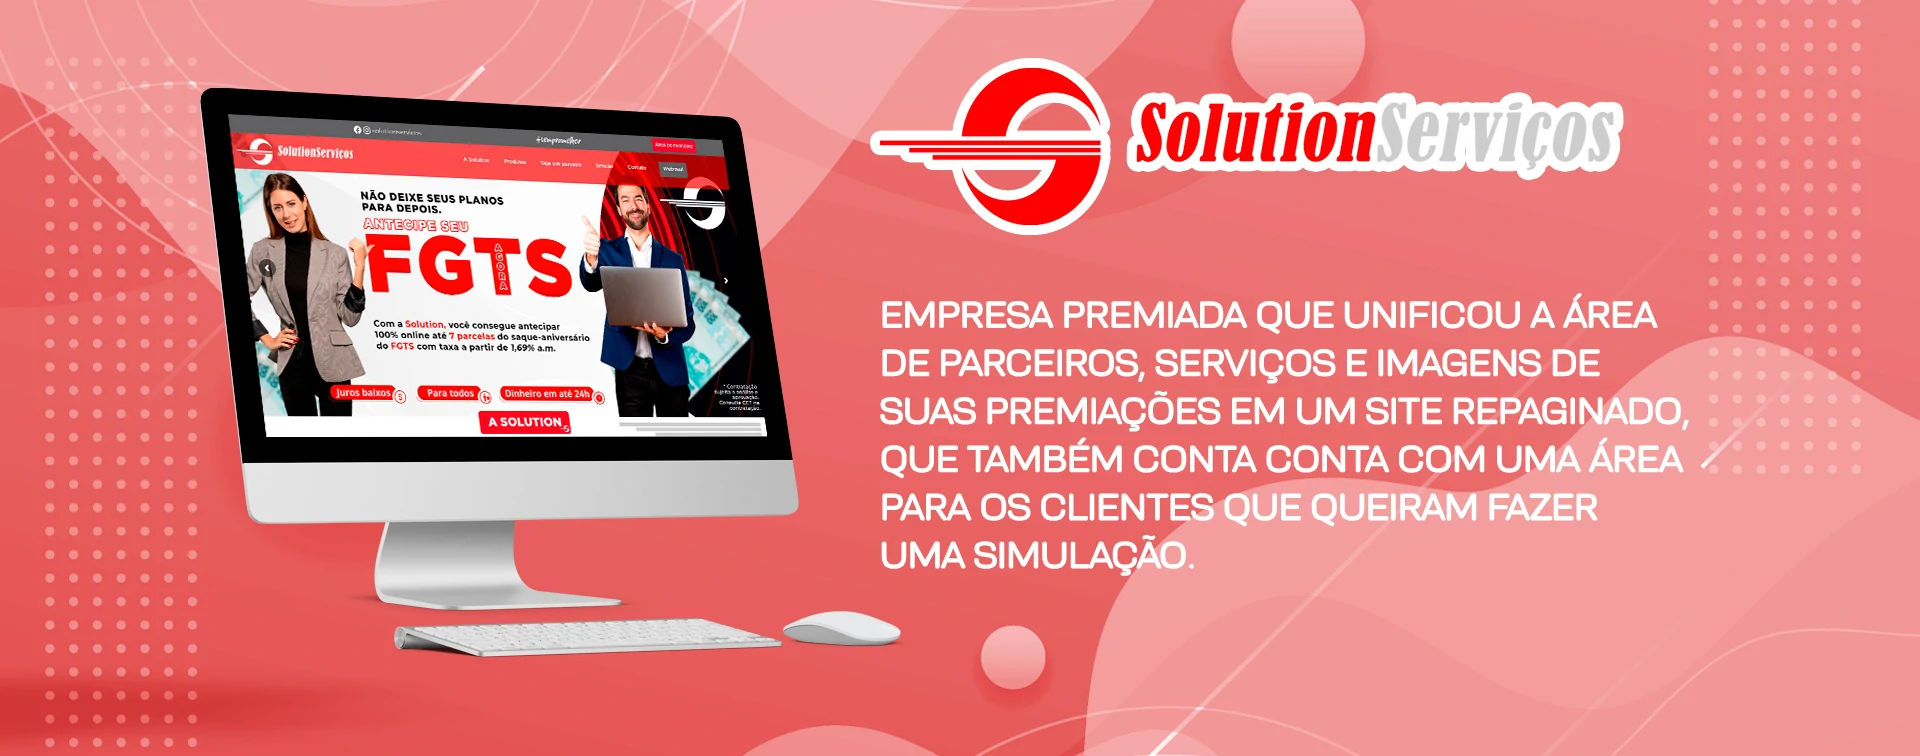 Solution-Servicos-Cliente-Agencia-Davs-Marketing-Digital-em-Fortaleza-1